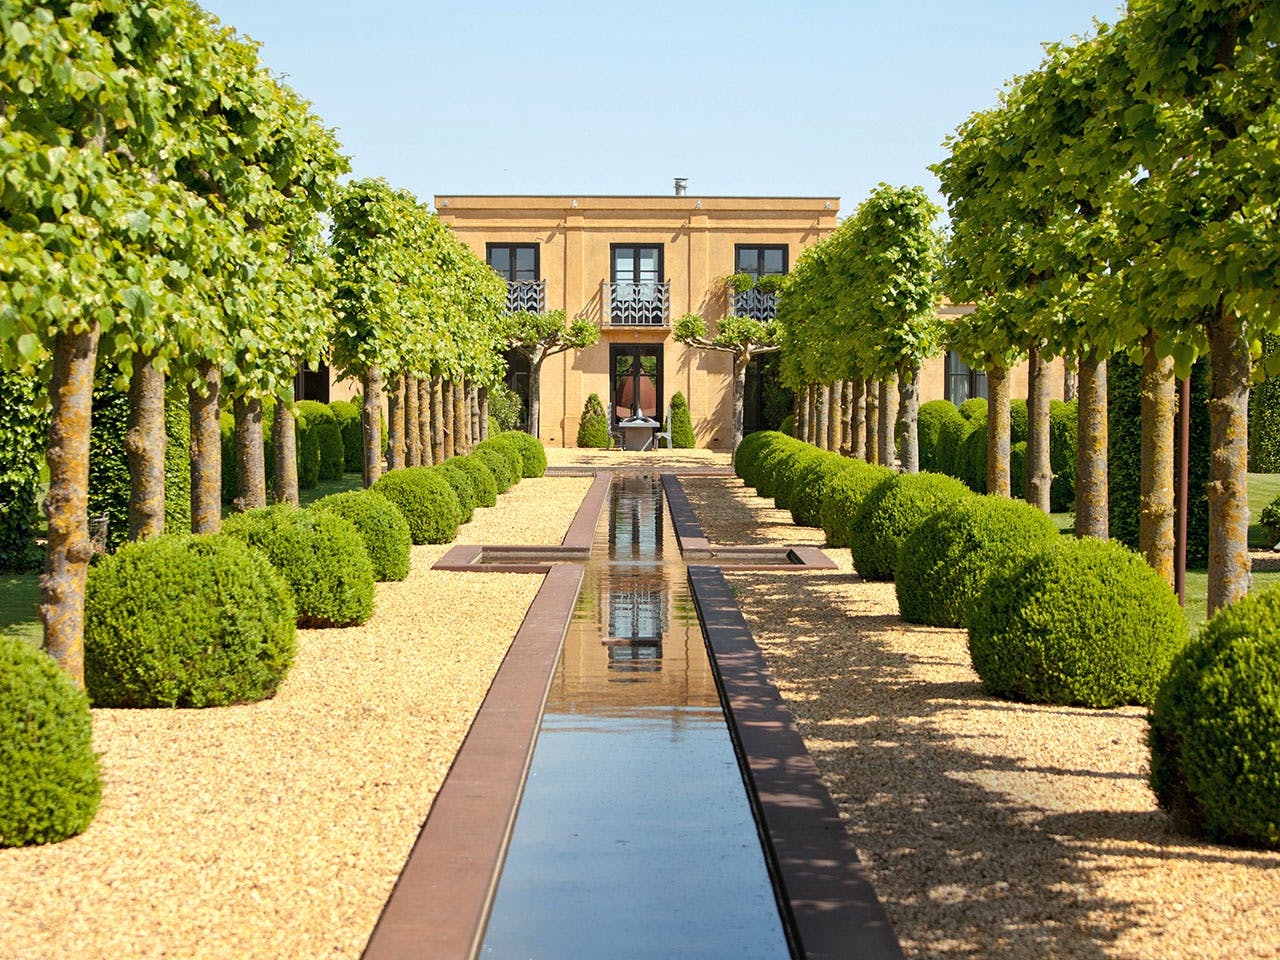 De lengteas van de tuin is ontworpen als metafoor voor de verticale lijn van het menselijk lichaam.